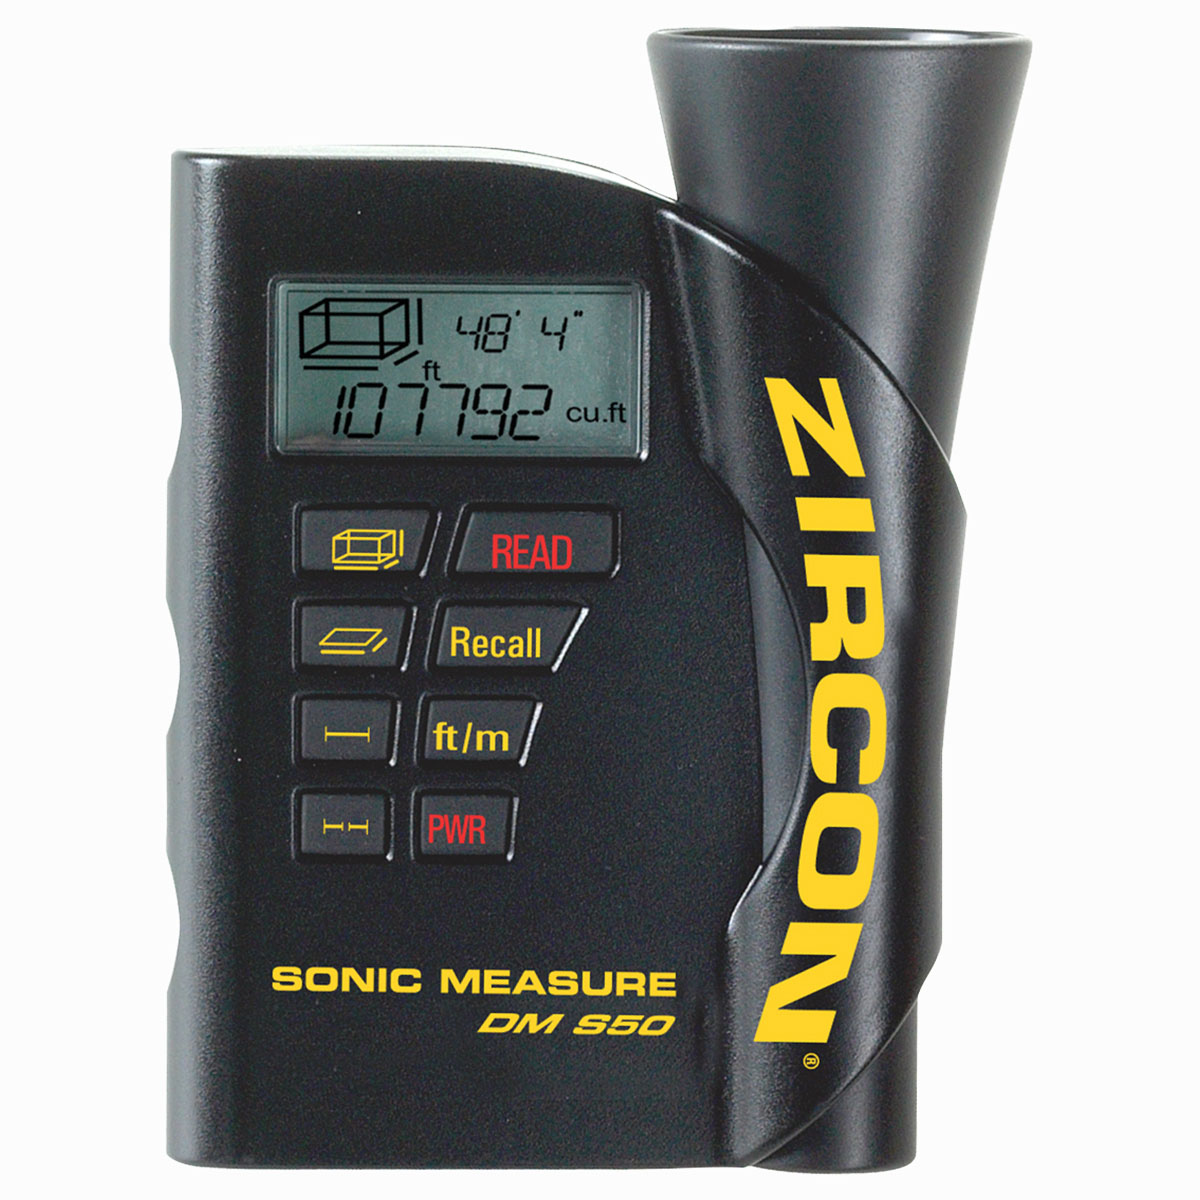 Zircon Sonic Measure DM S50